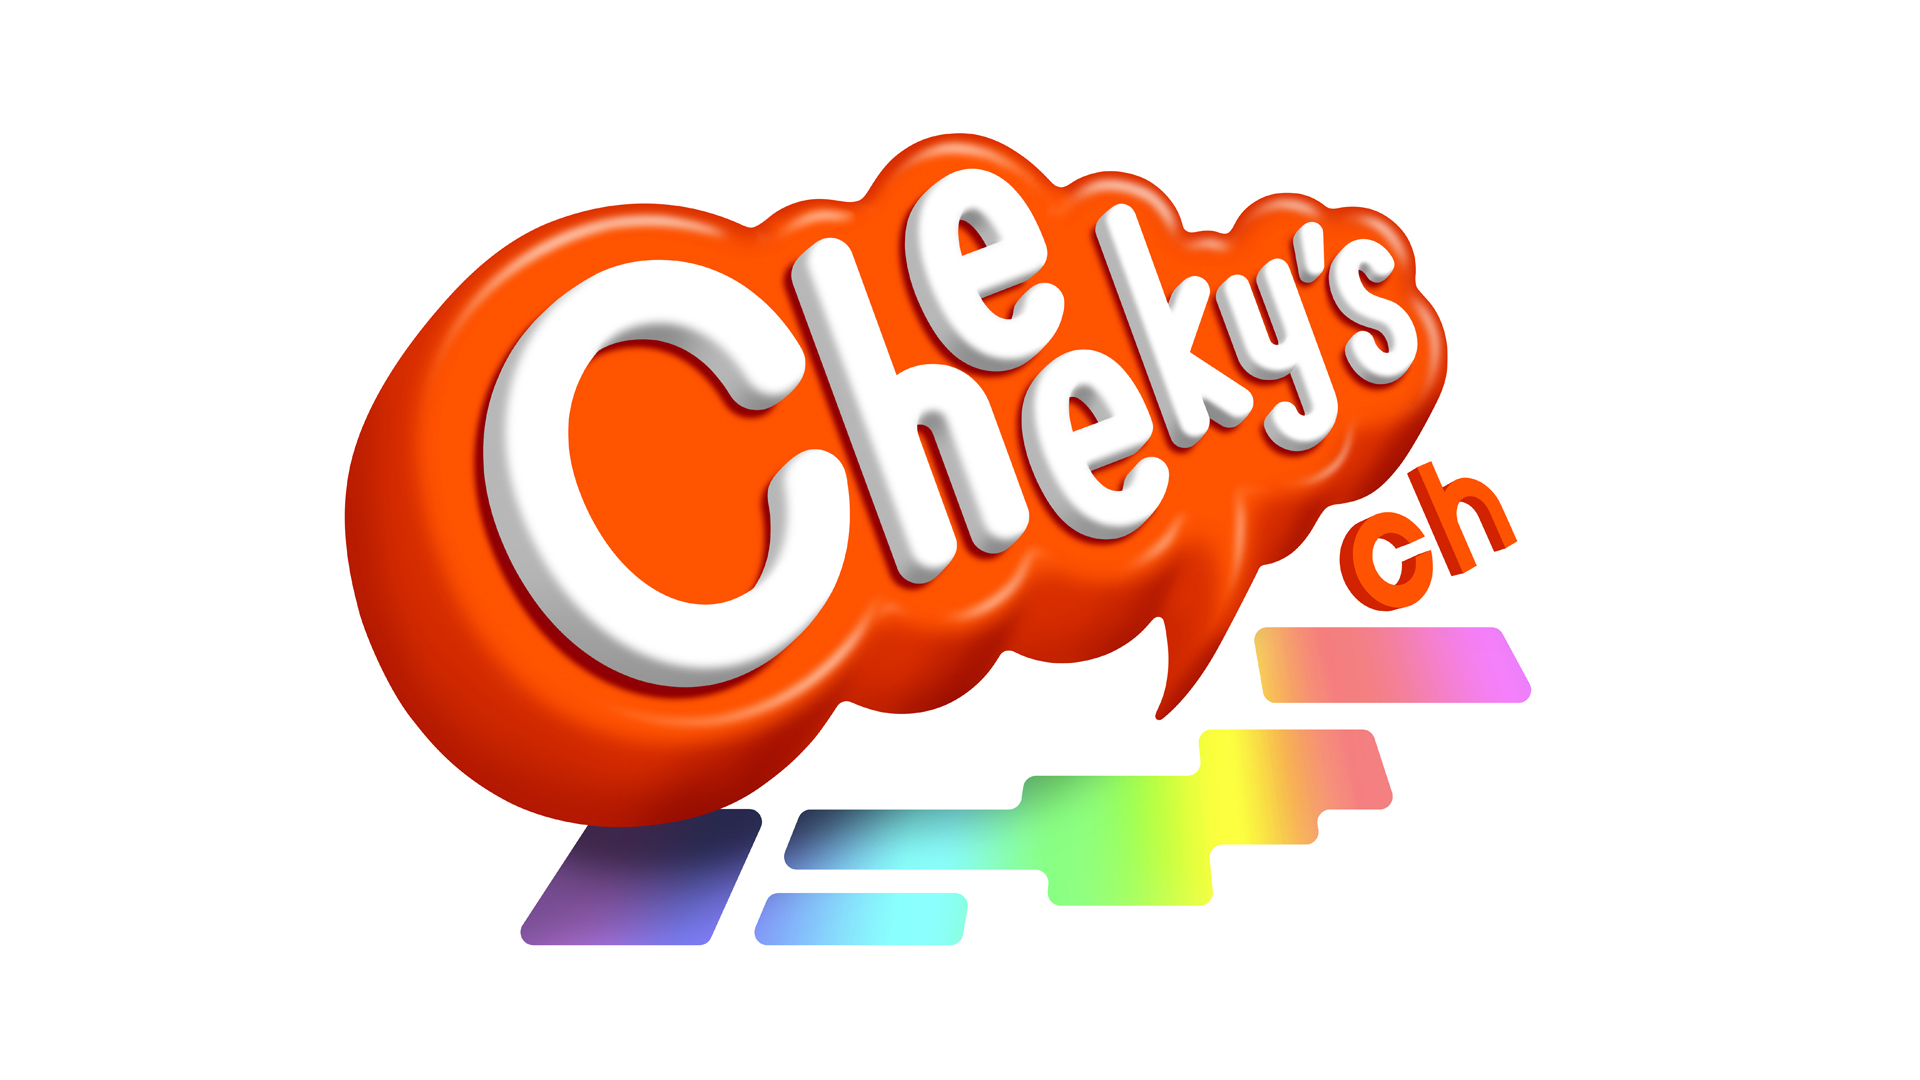 Cheeky's チャンネル